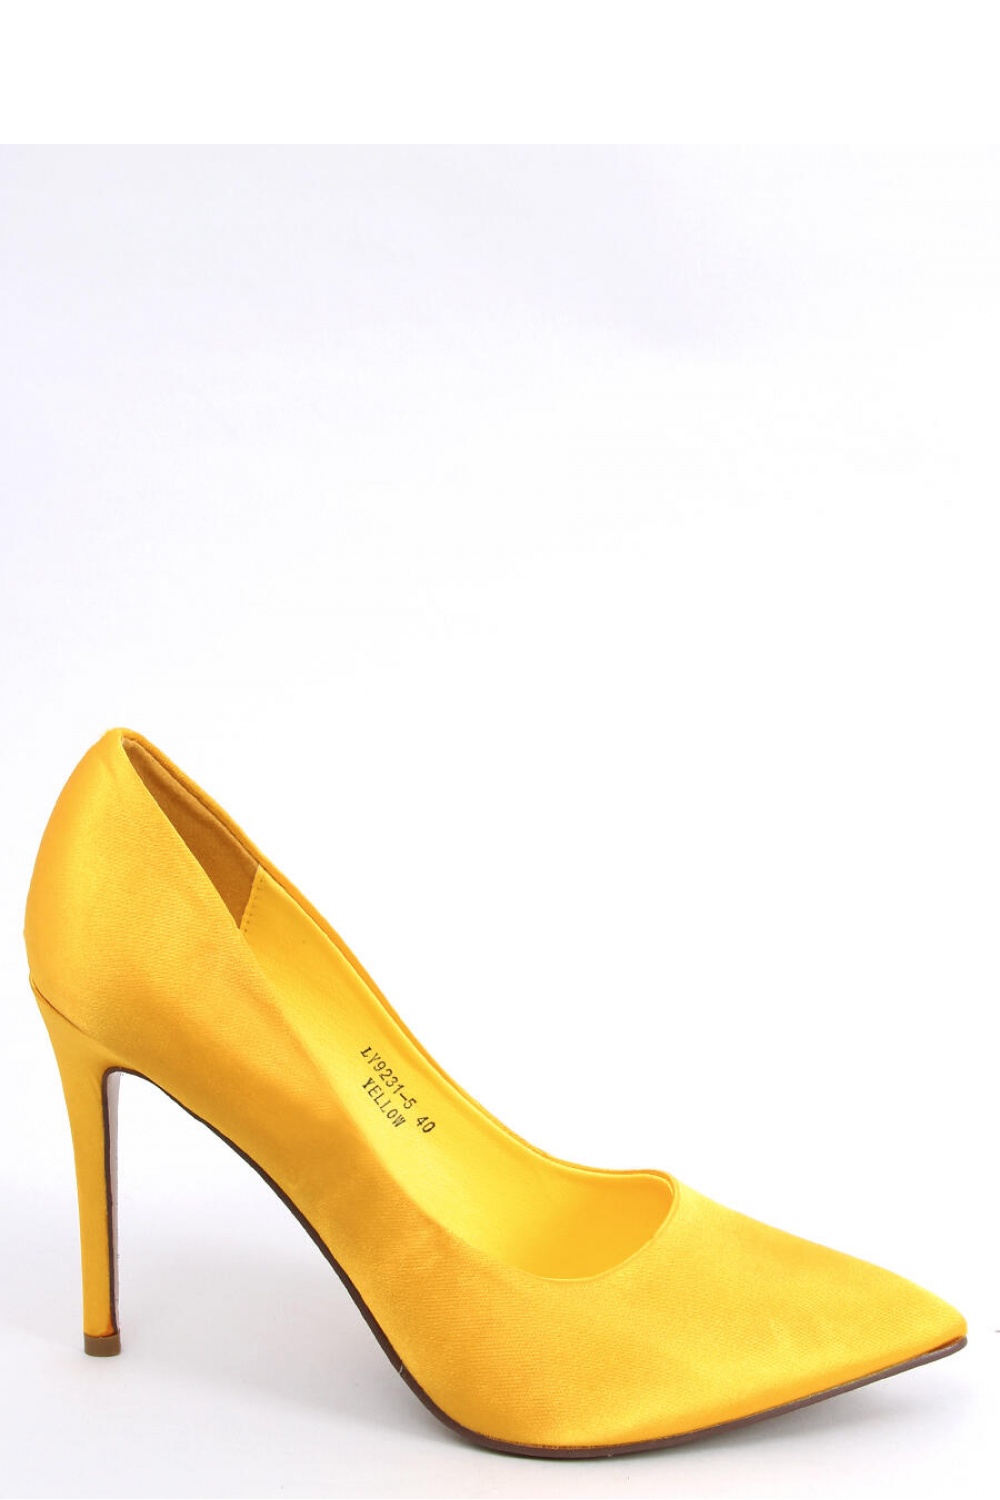 High heels model 174105 Inello